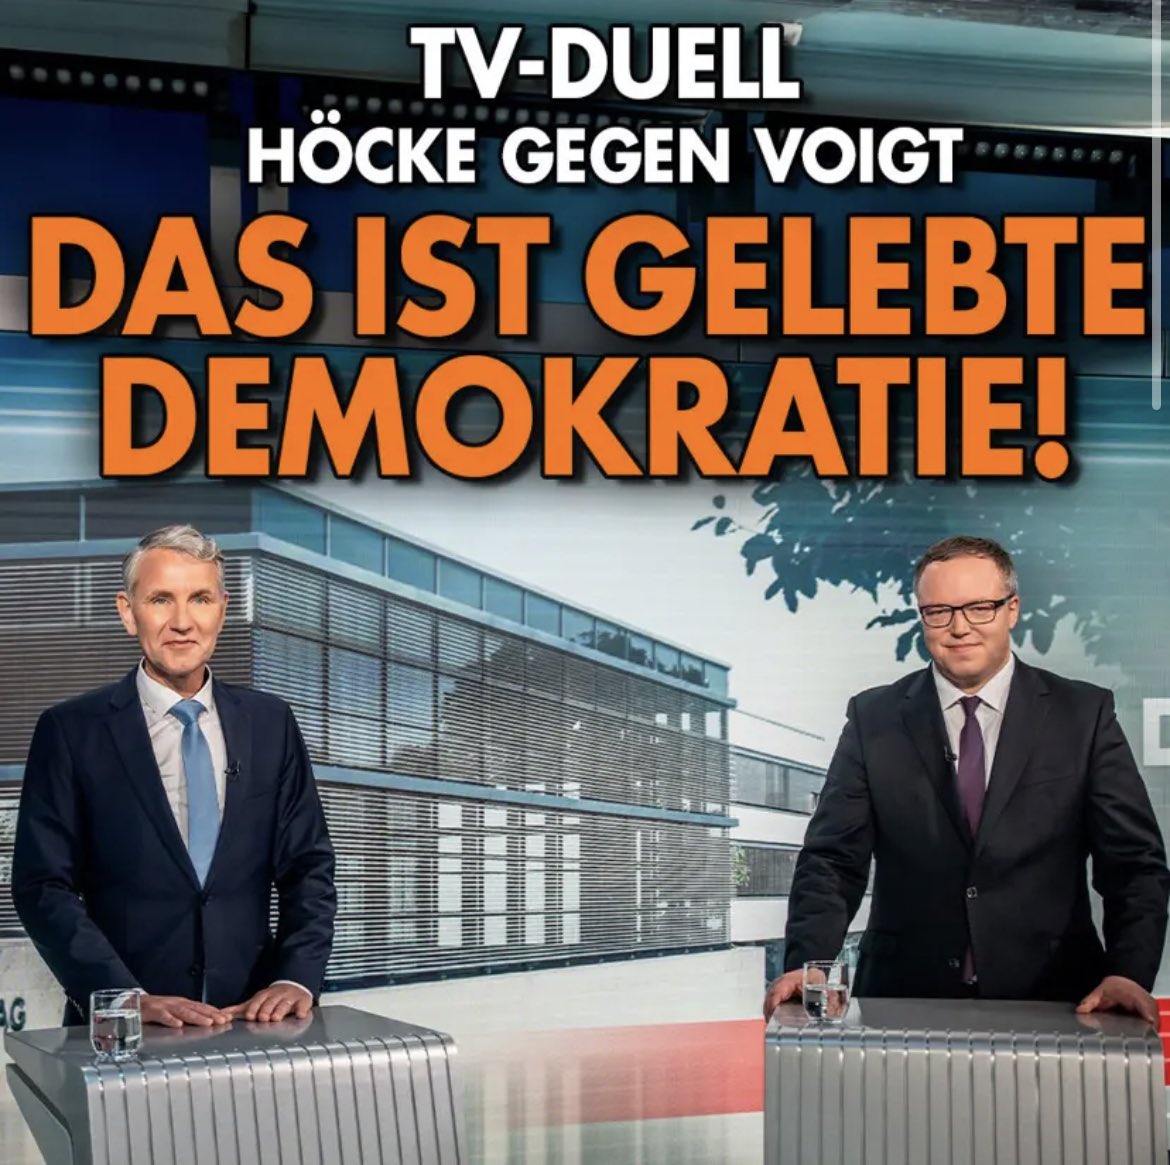 Ein bisschen die Ideen von Deutschlands Ober-Nazi öffentlich per #TVDuell zu diskutieren ist jetzt 'gelebte Demokratie'. Das ist alles so kaputt.